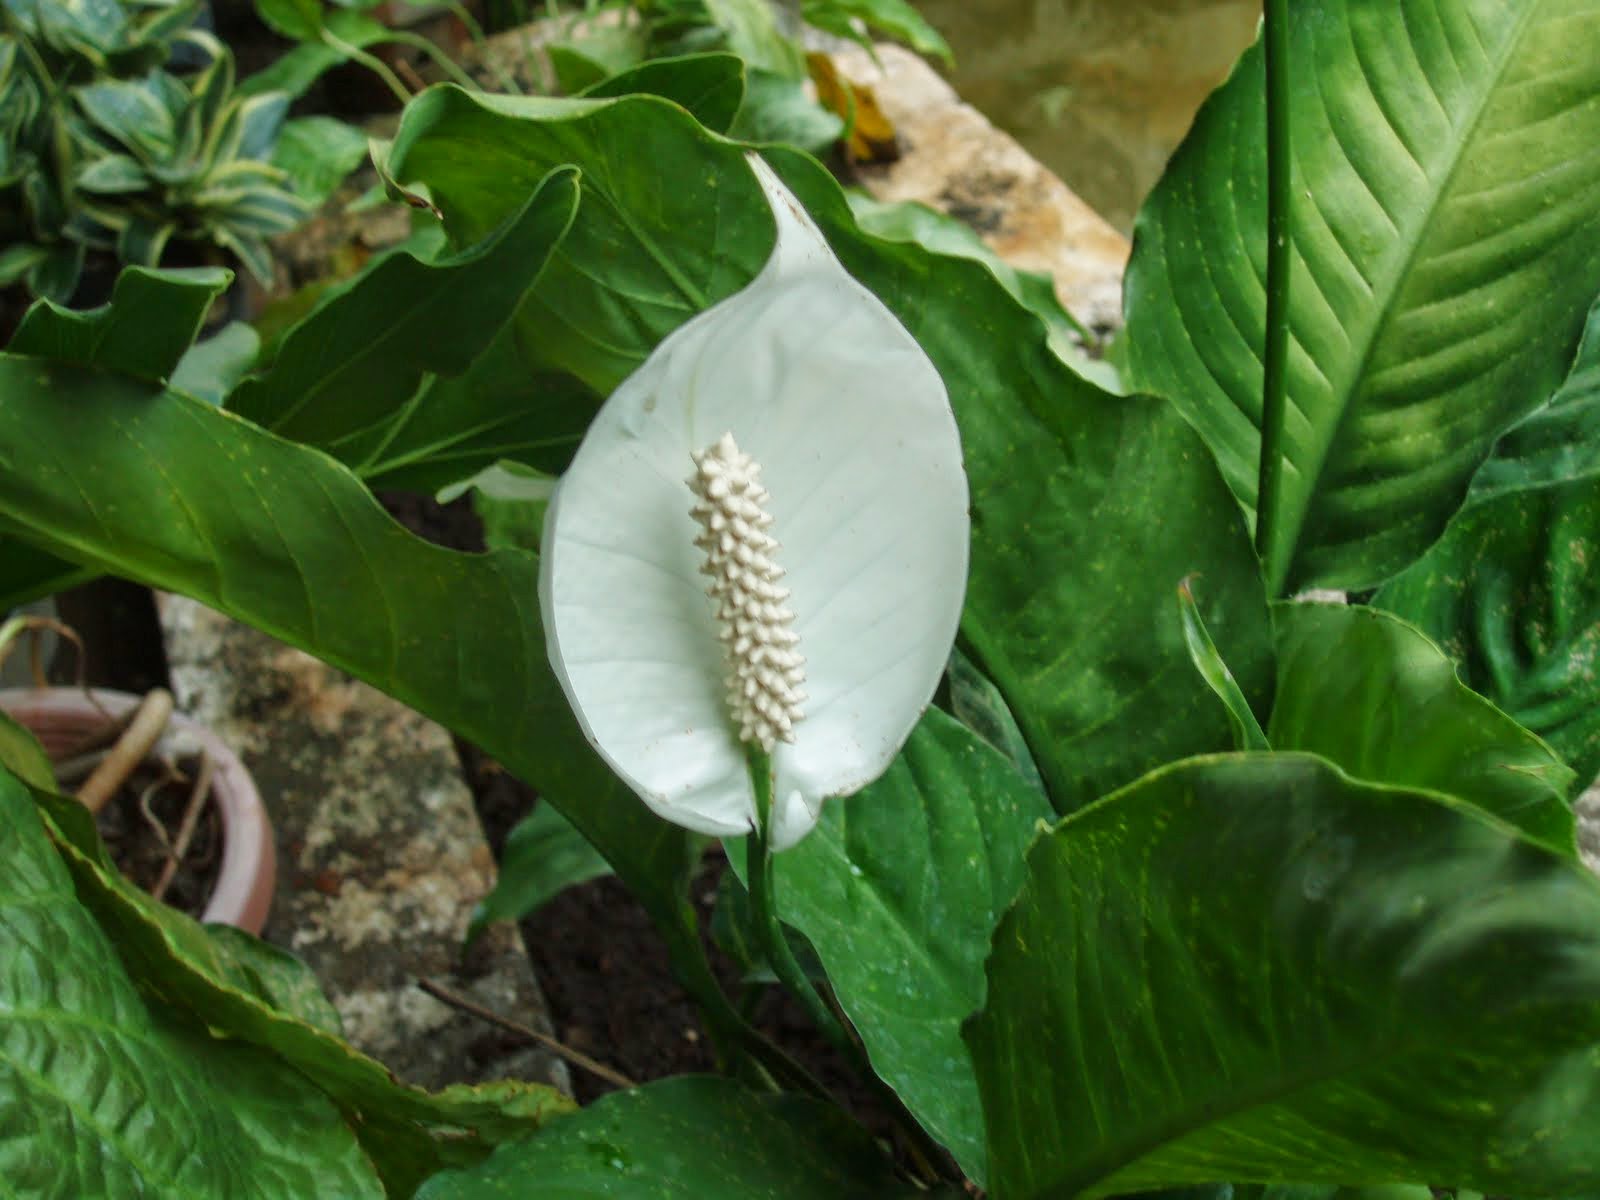 Jual Tanaman Sphathiphyllum | Bunga Peace Lily | Tanaman ...